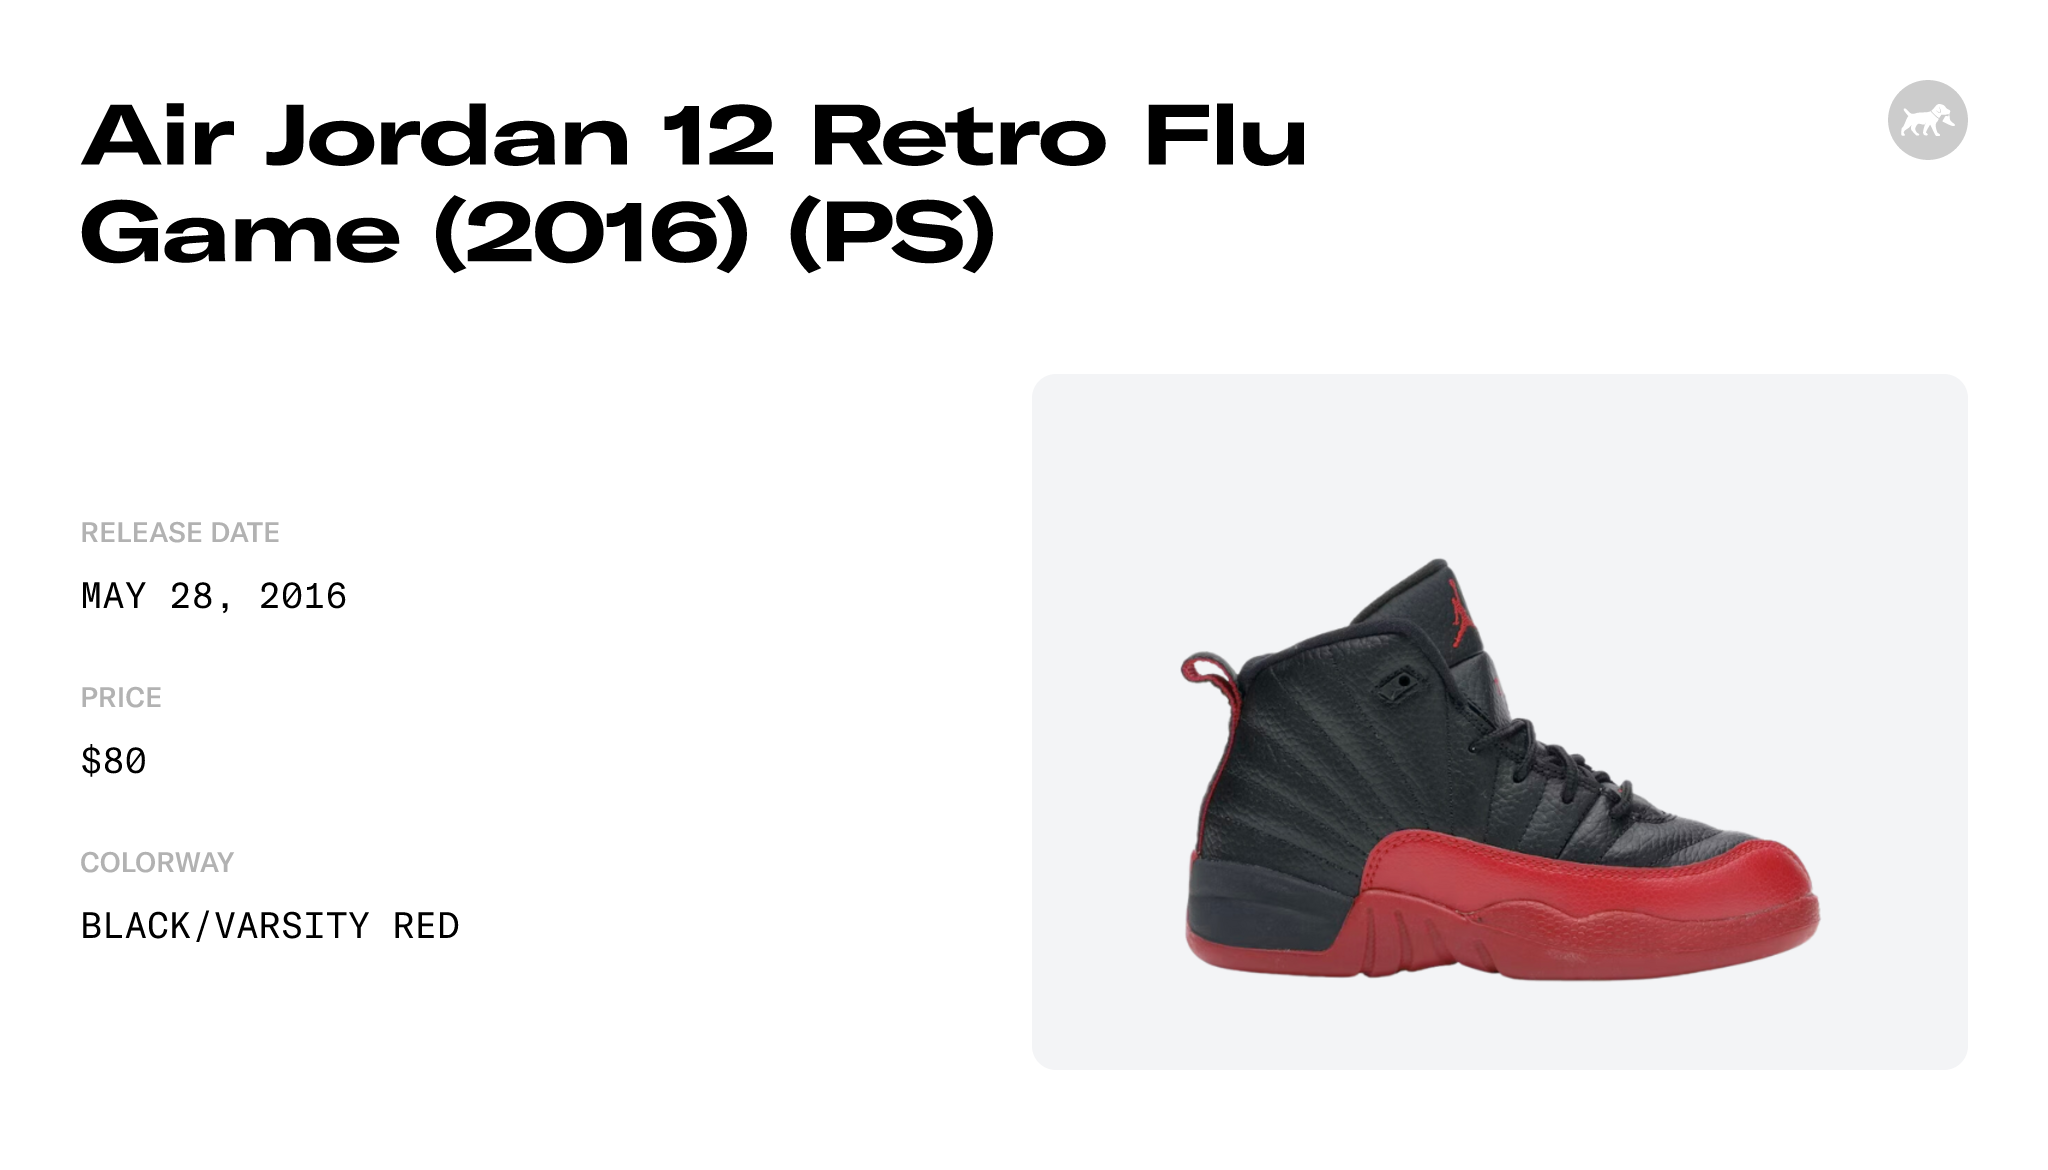 Air Jordan 12 Retro Flu Game (2016) (PS) - 151186-002 Raffles and Release  Date